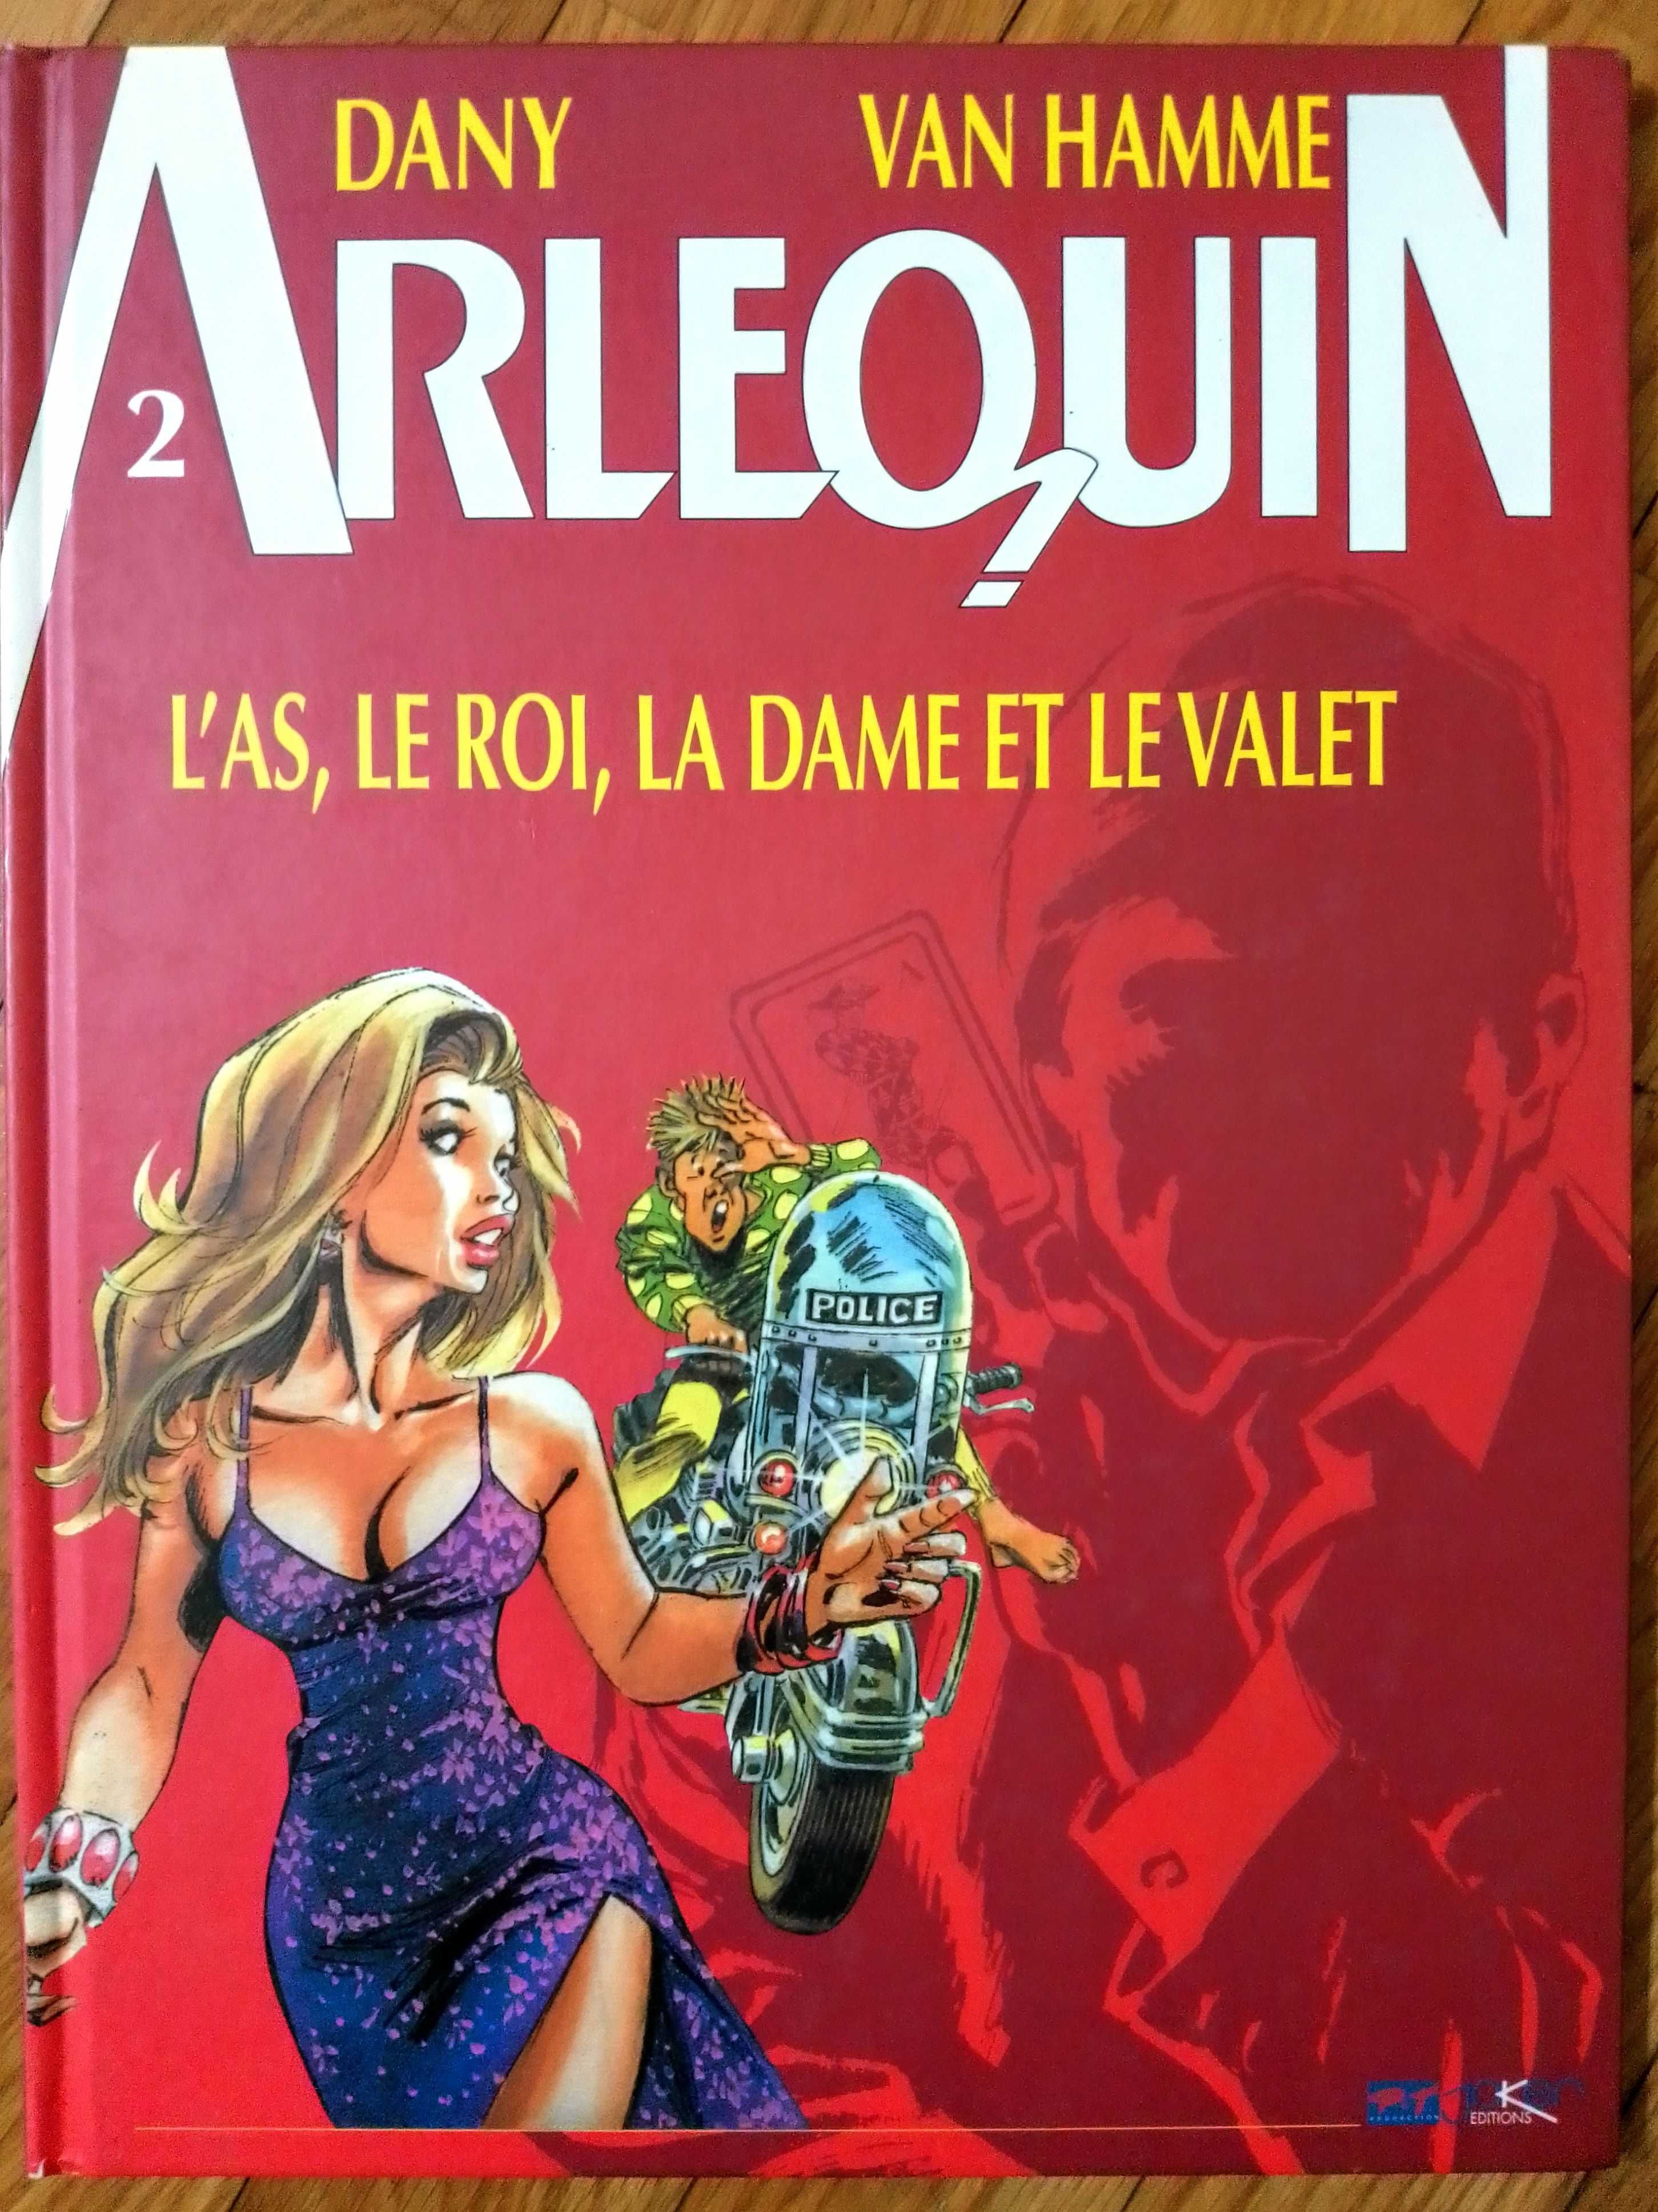 Arlequin - 2 Volumes em francês (Capa Dura) - preço do lote!